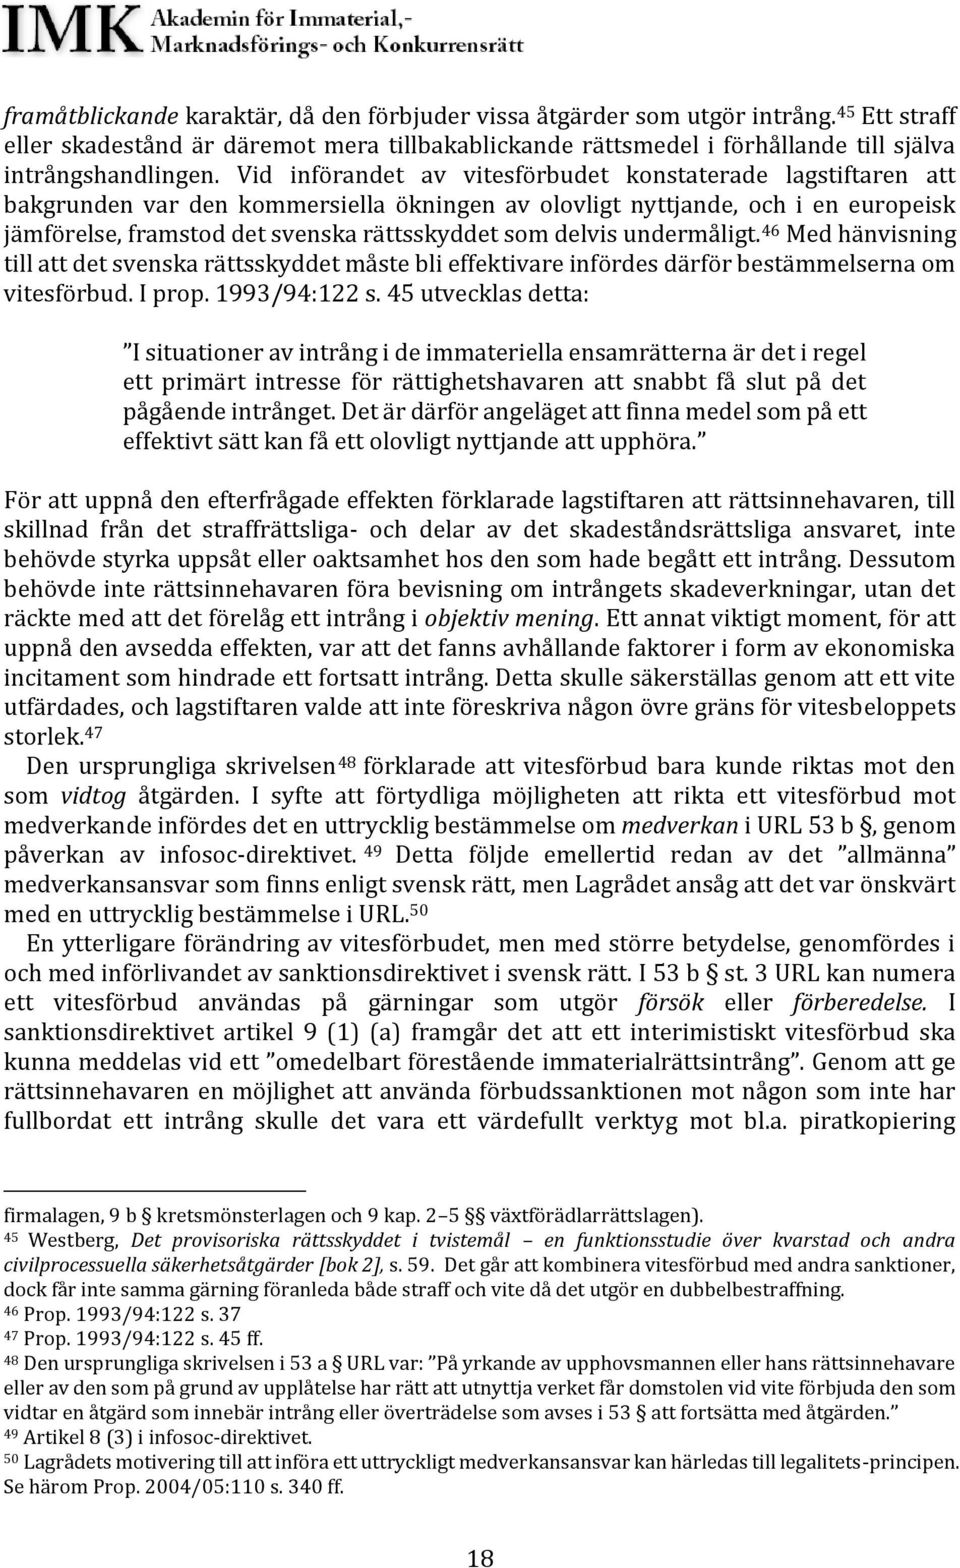 delvis undermåligt. 46 Med hänvisning till att det svenska rättsskyddet måste bli effektivare infördes därför bestämmelserna om vitesförbud. I prop. 1993/94:122 s.